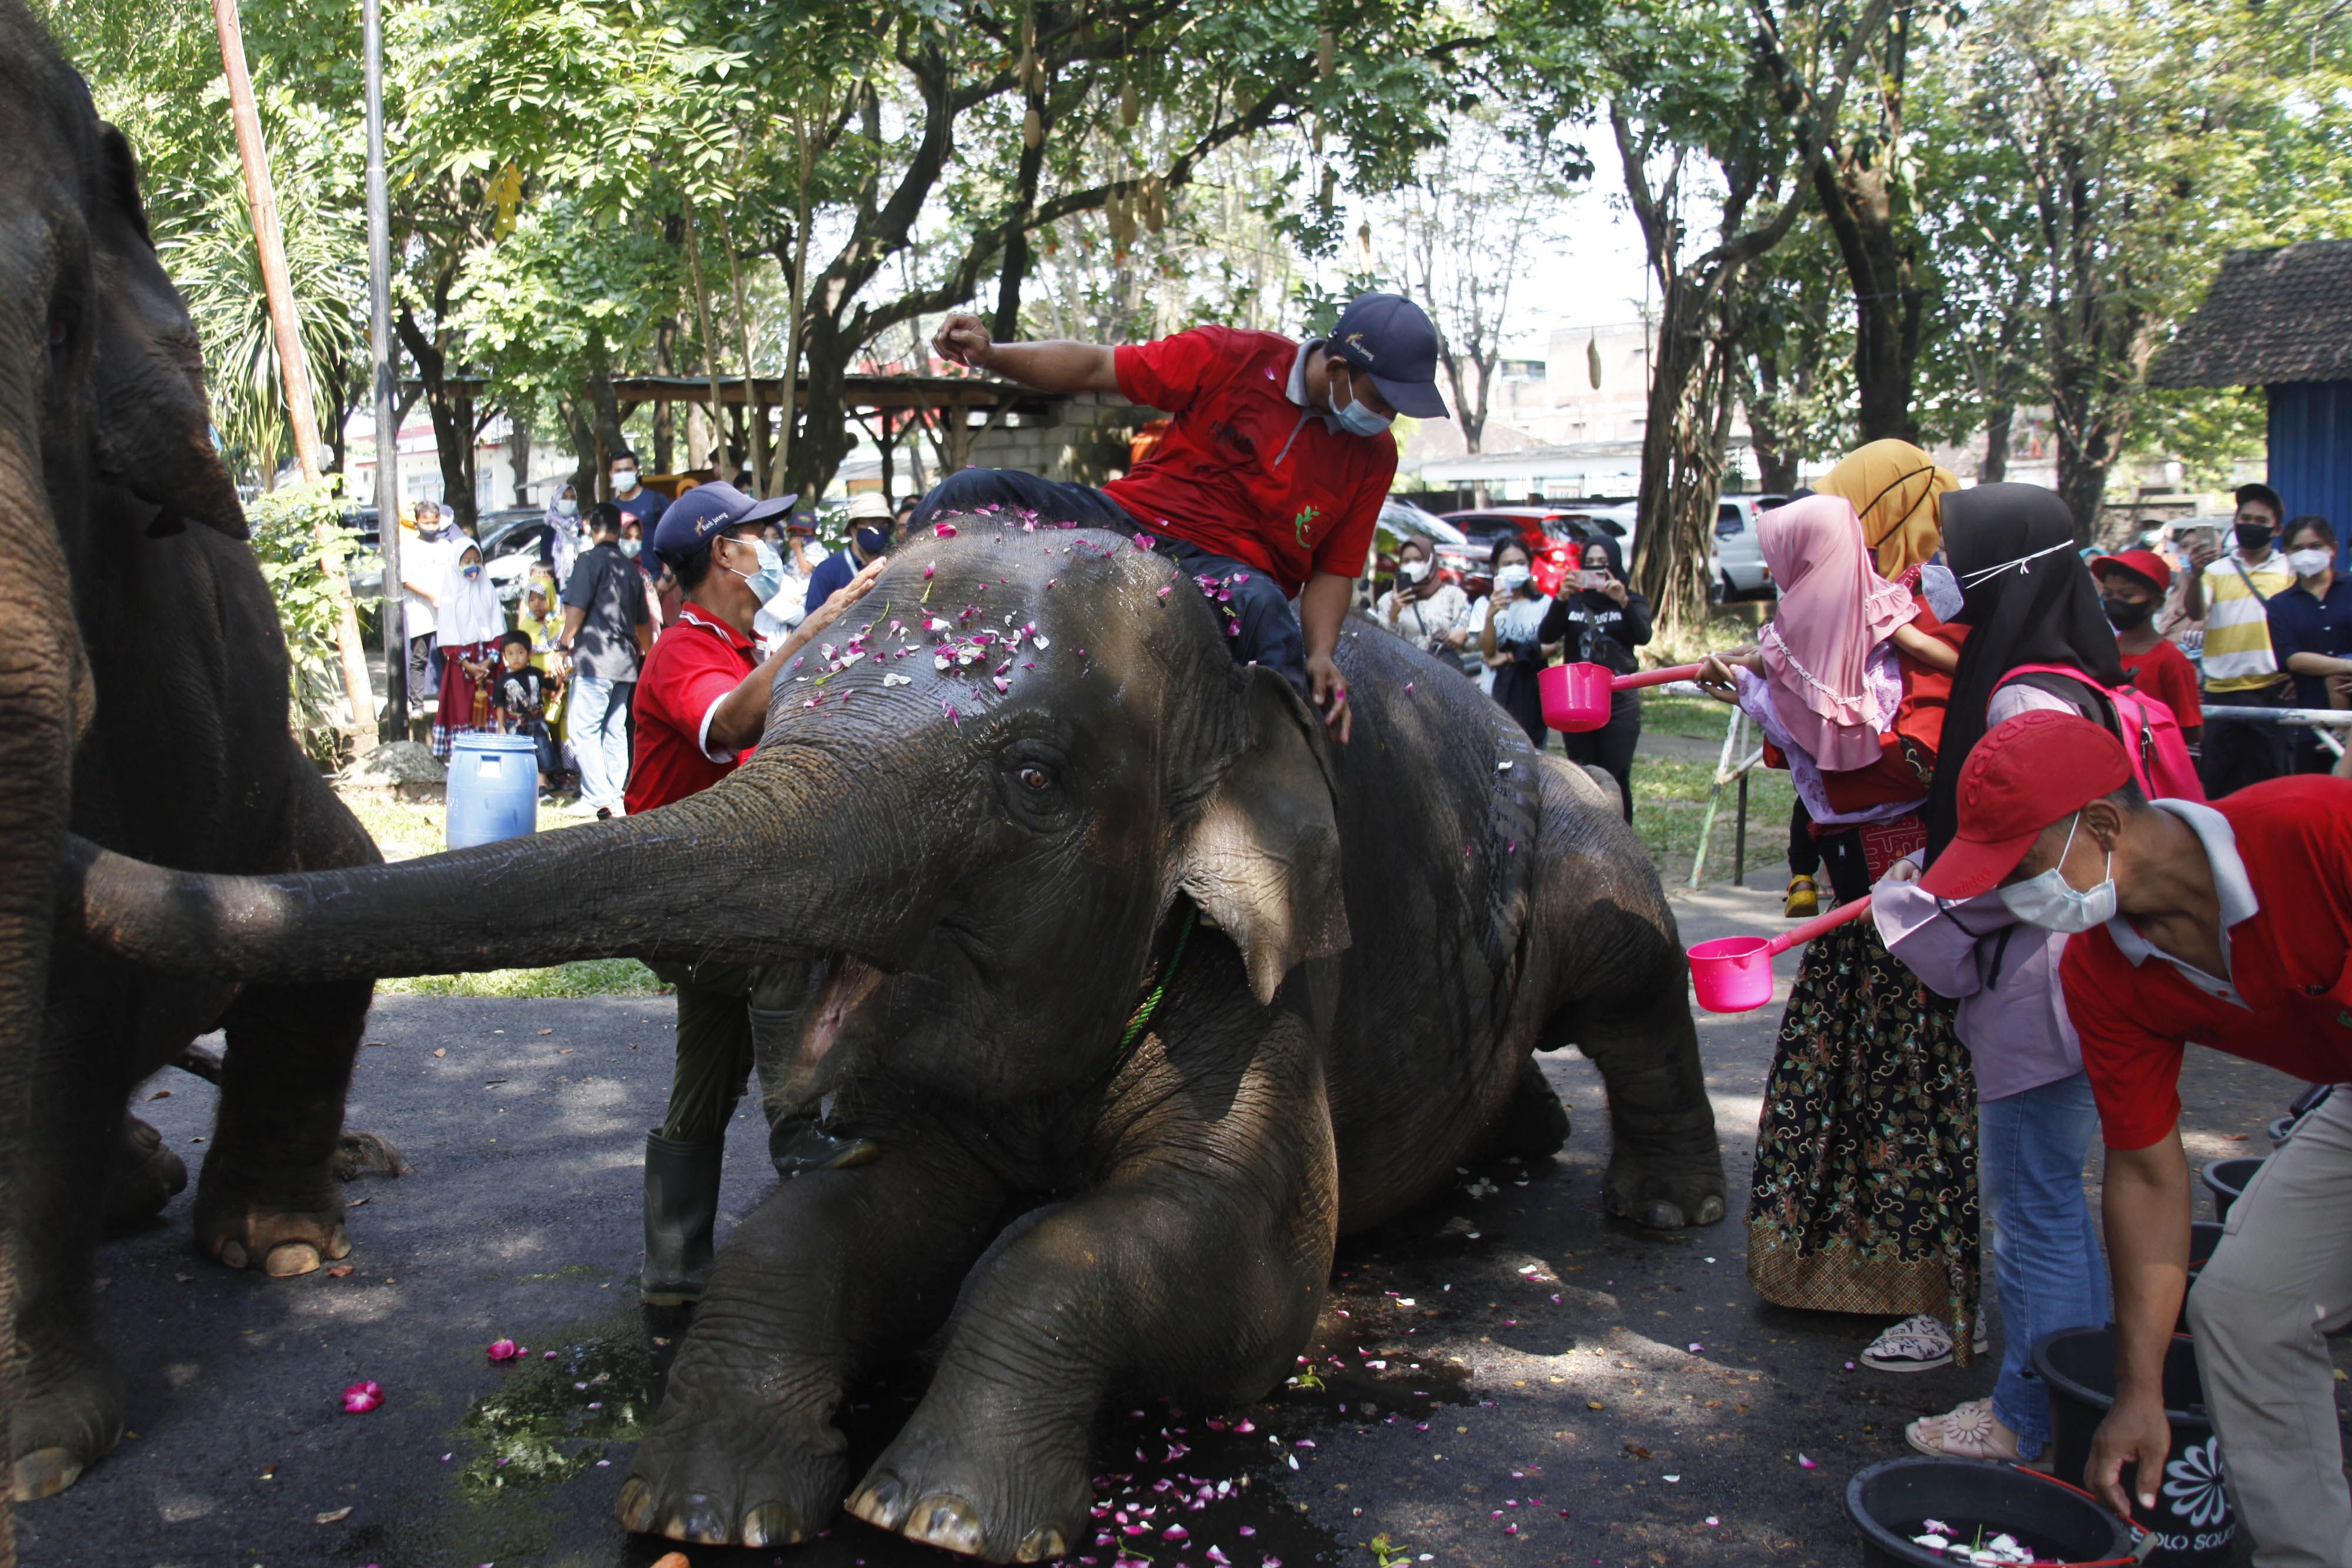  Solo Zoo atau Taman Satwa Taru Jurug (TSTJ) di Solo, Jawa Tengah, Minggu (6/6/2021). Kegiatan tersebut digelar sebagai perayaan HUT ke-12 gajah koleksi Solo Zoo Manohara. ANTARAFOTO/Maulana Surya/foc.